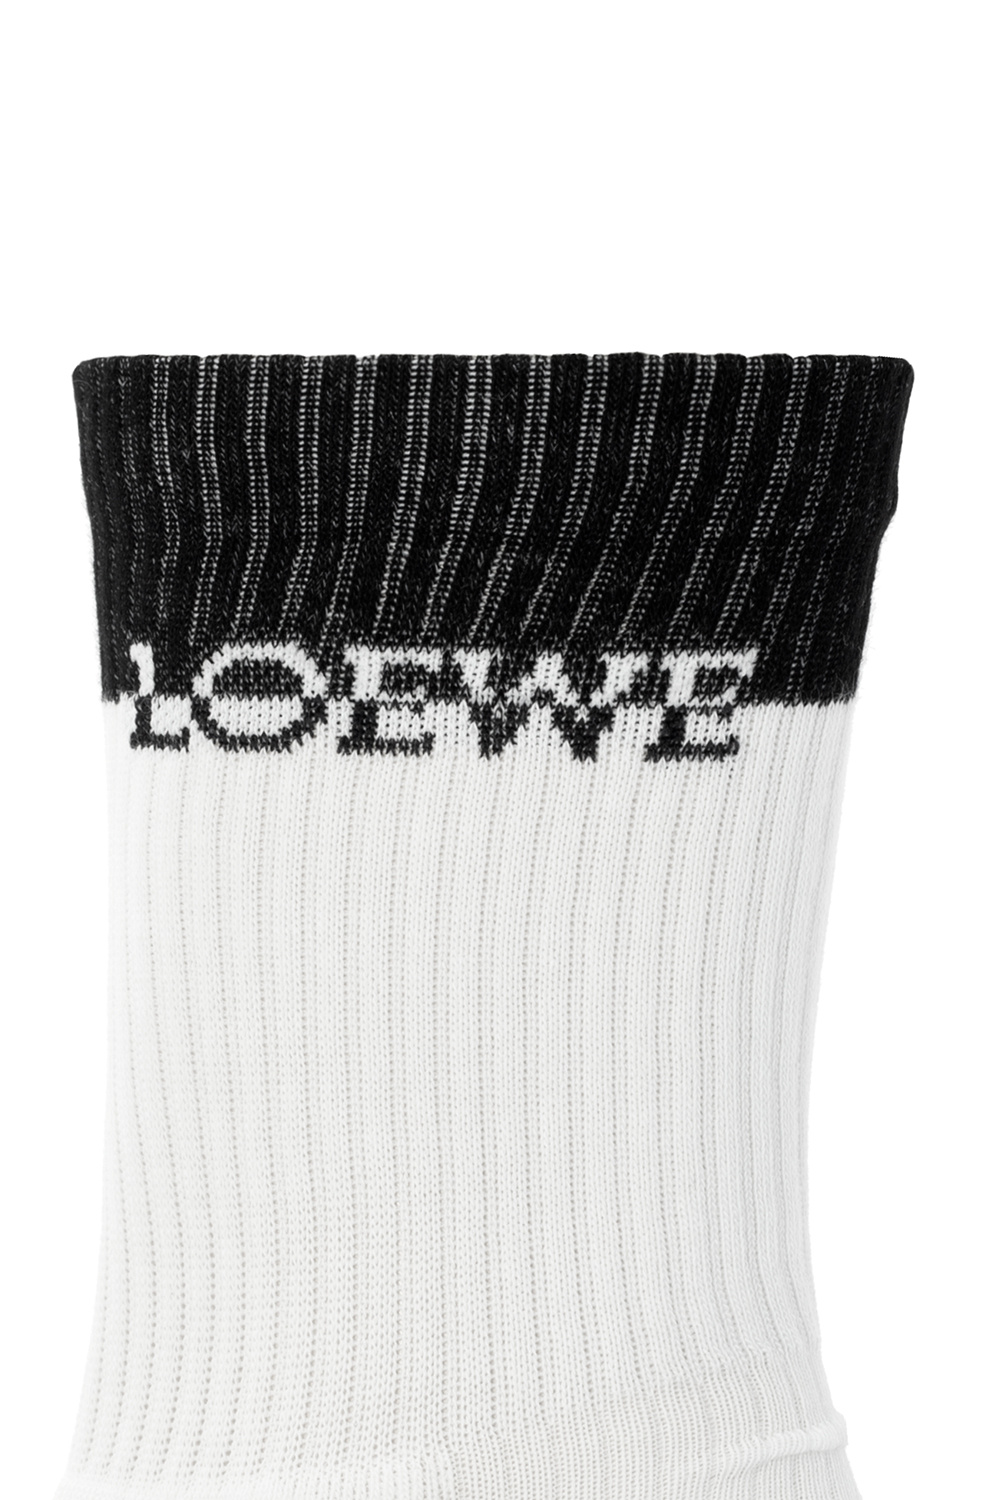 Loewe Socks with logo | Men's Clothing | Vitkac